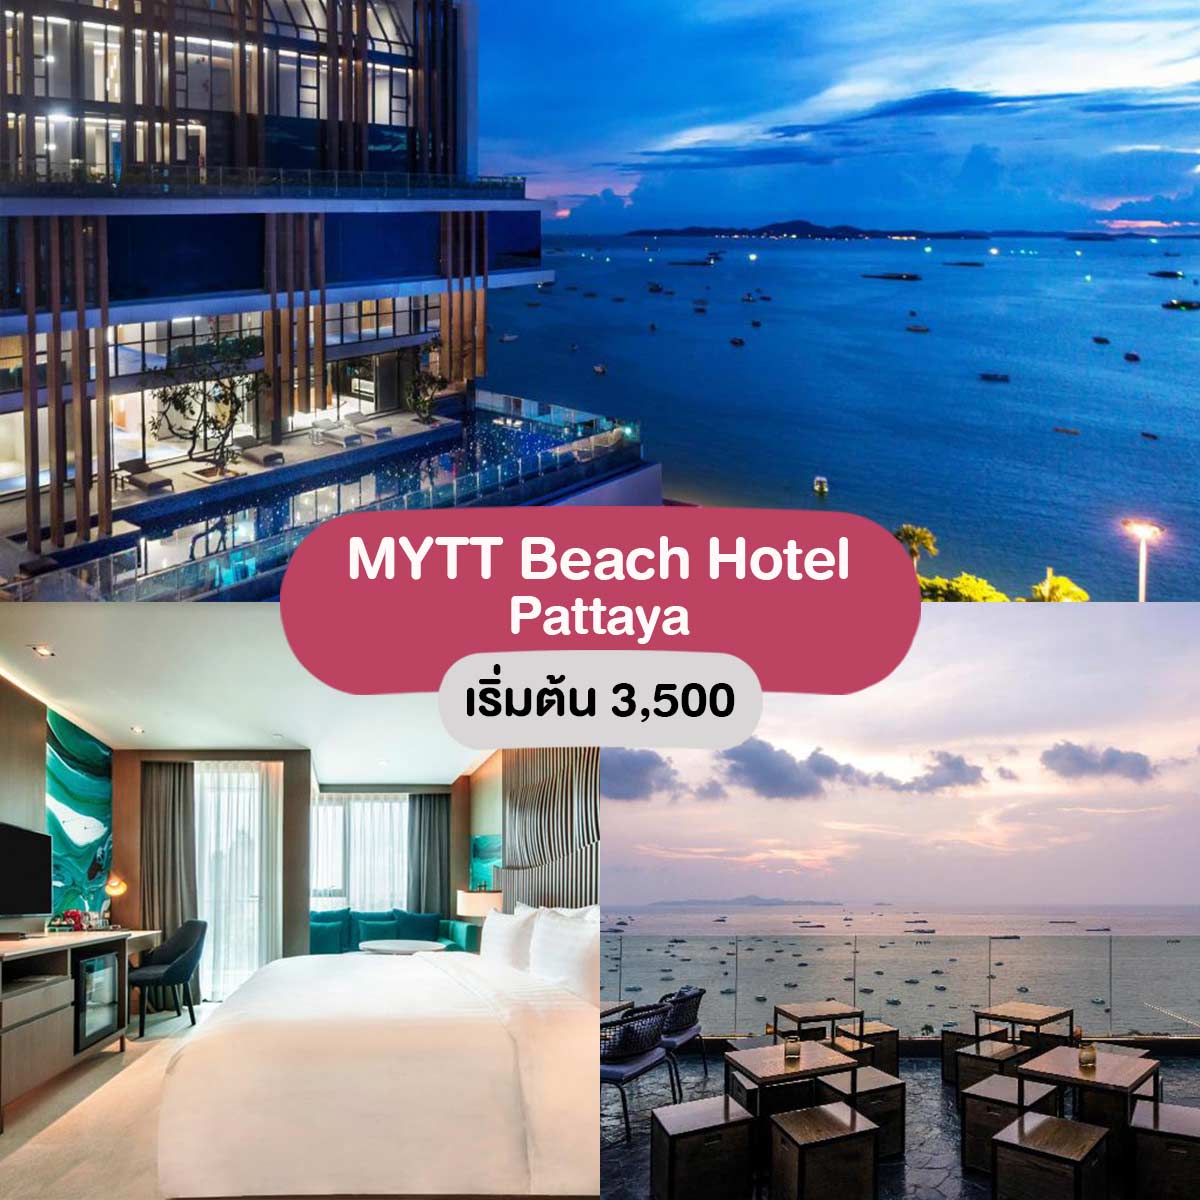 MYTT Beach Hotel, Pattaya